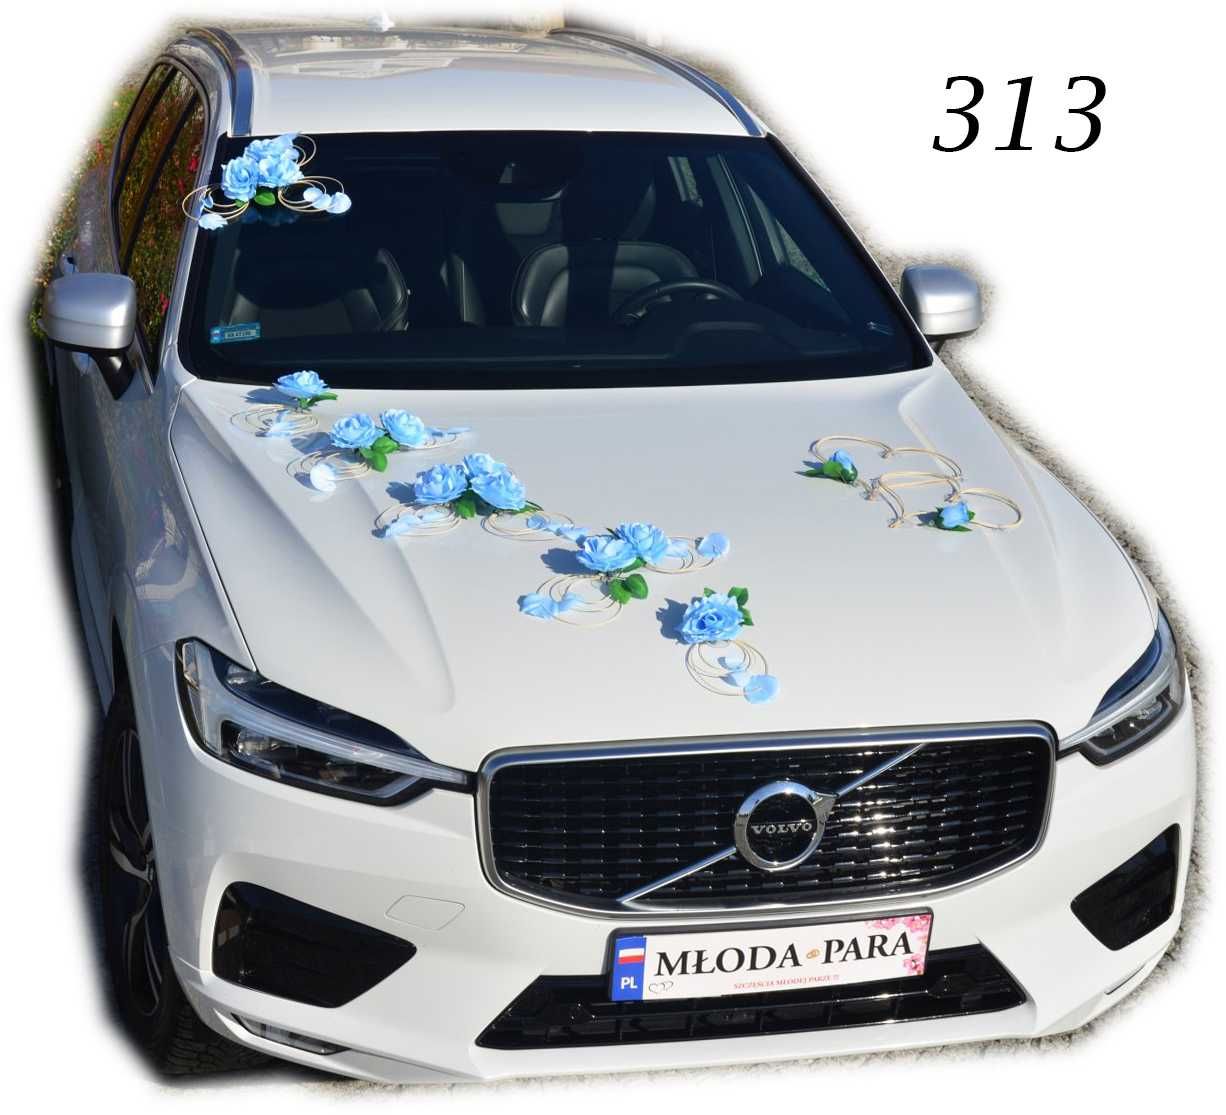 Niebieska dekoracja samochodu na samochód do ślubu POLECAMY 313